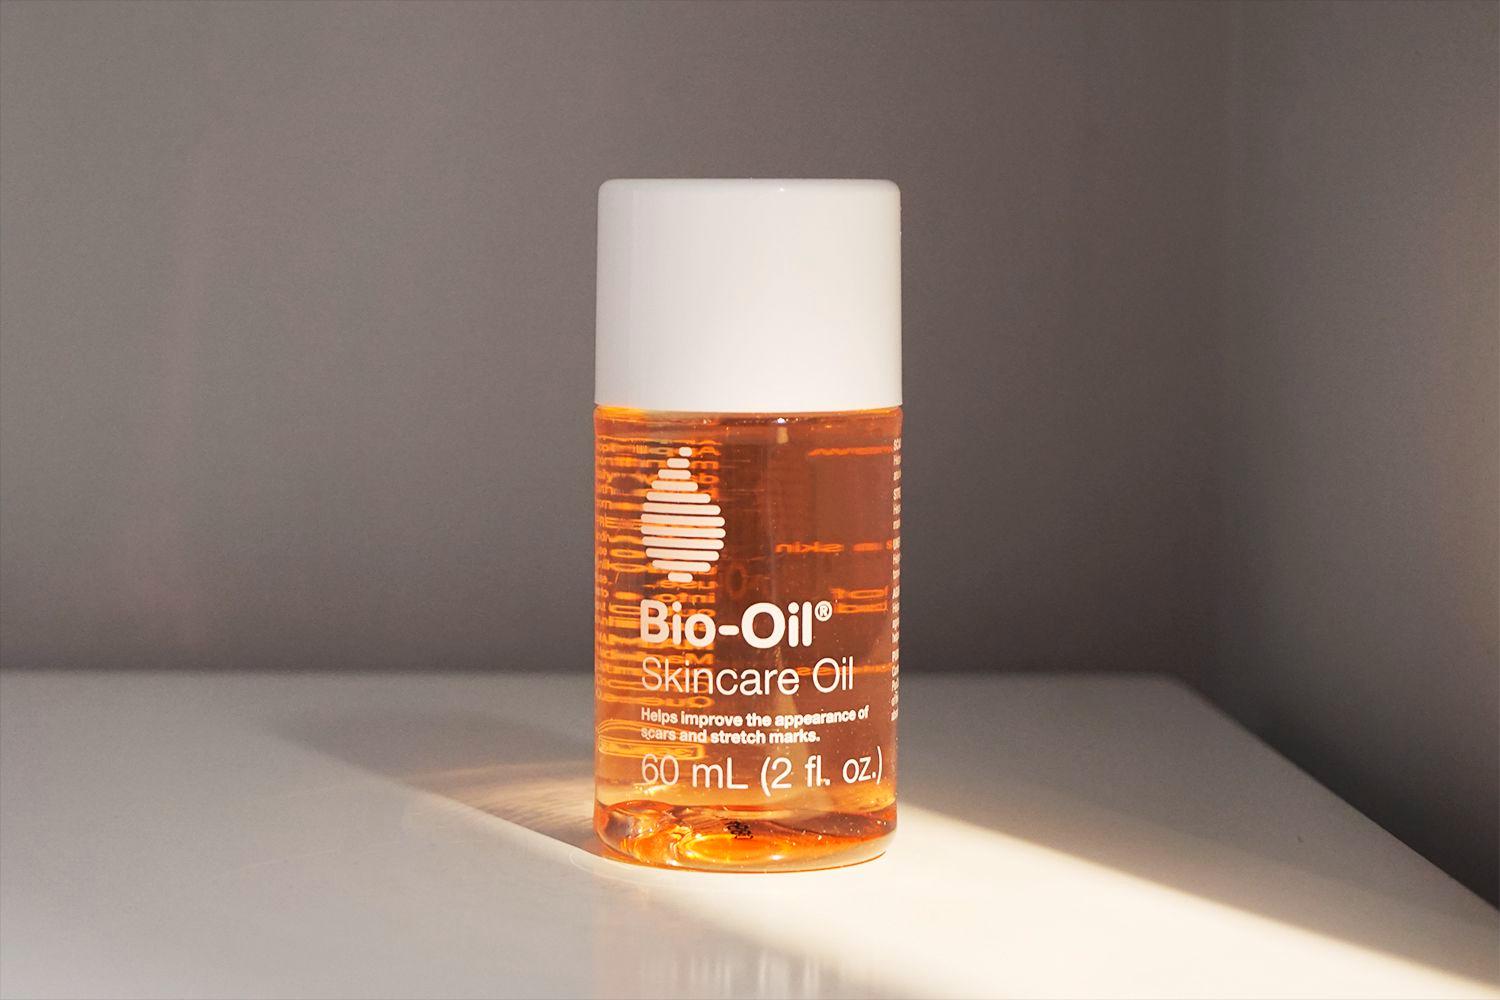 بایو اویل ۶۰ میل - Bio-Oil اصل - رزآنجل